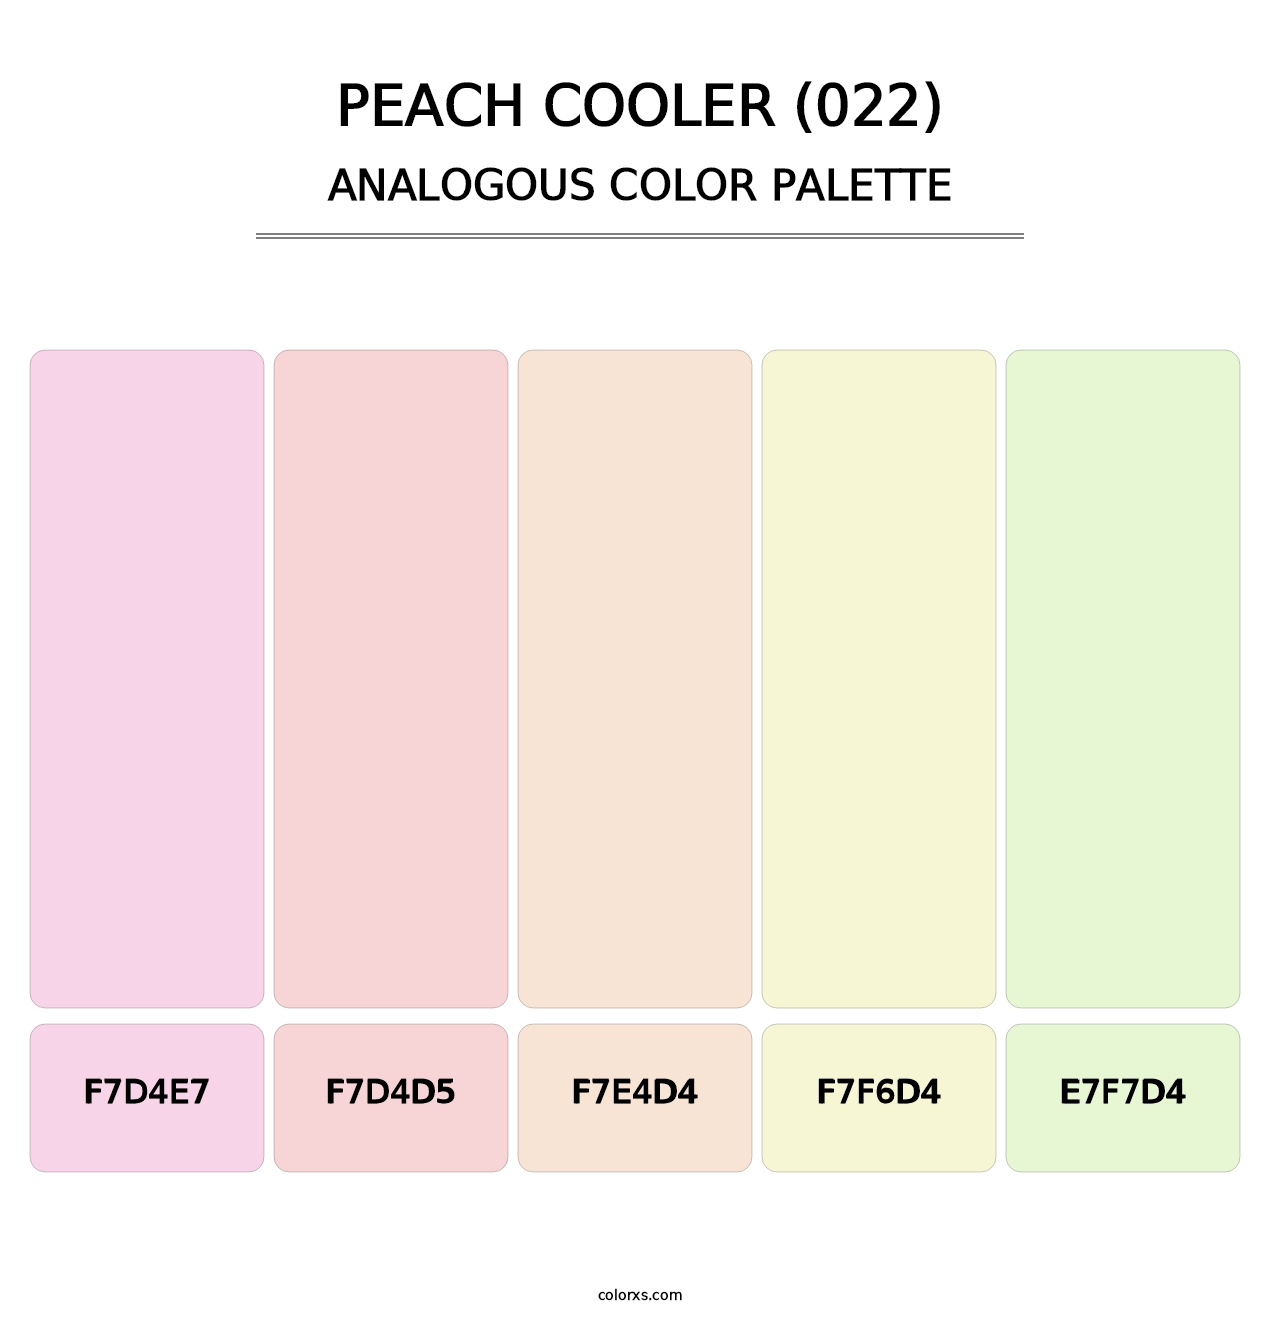 Peach Cooler (022) - Analogous Color Palette